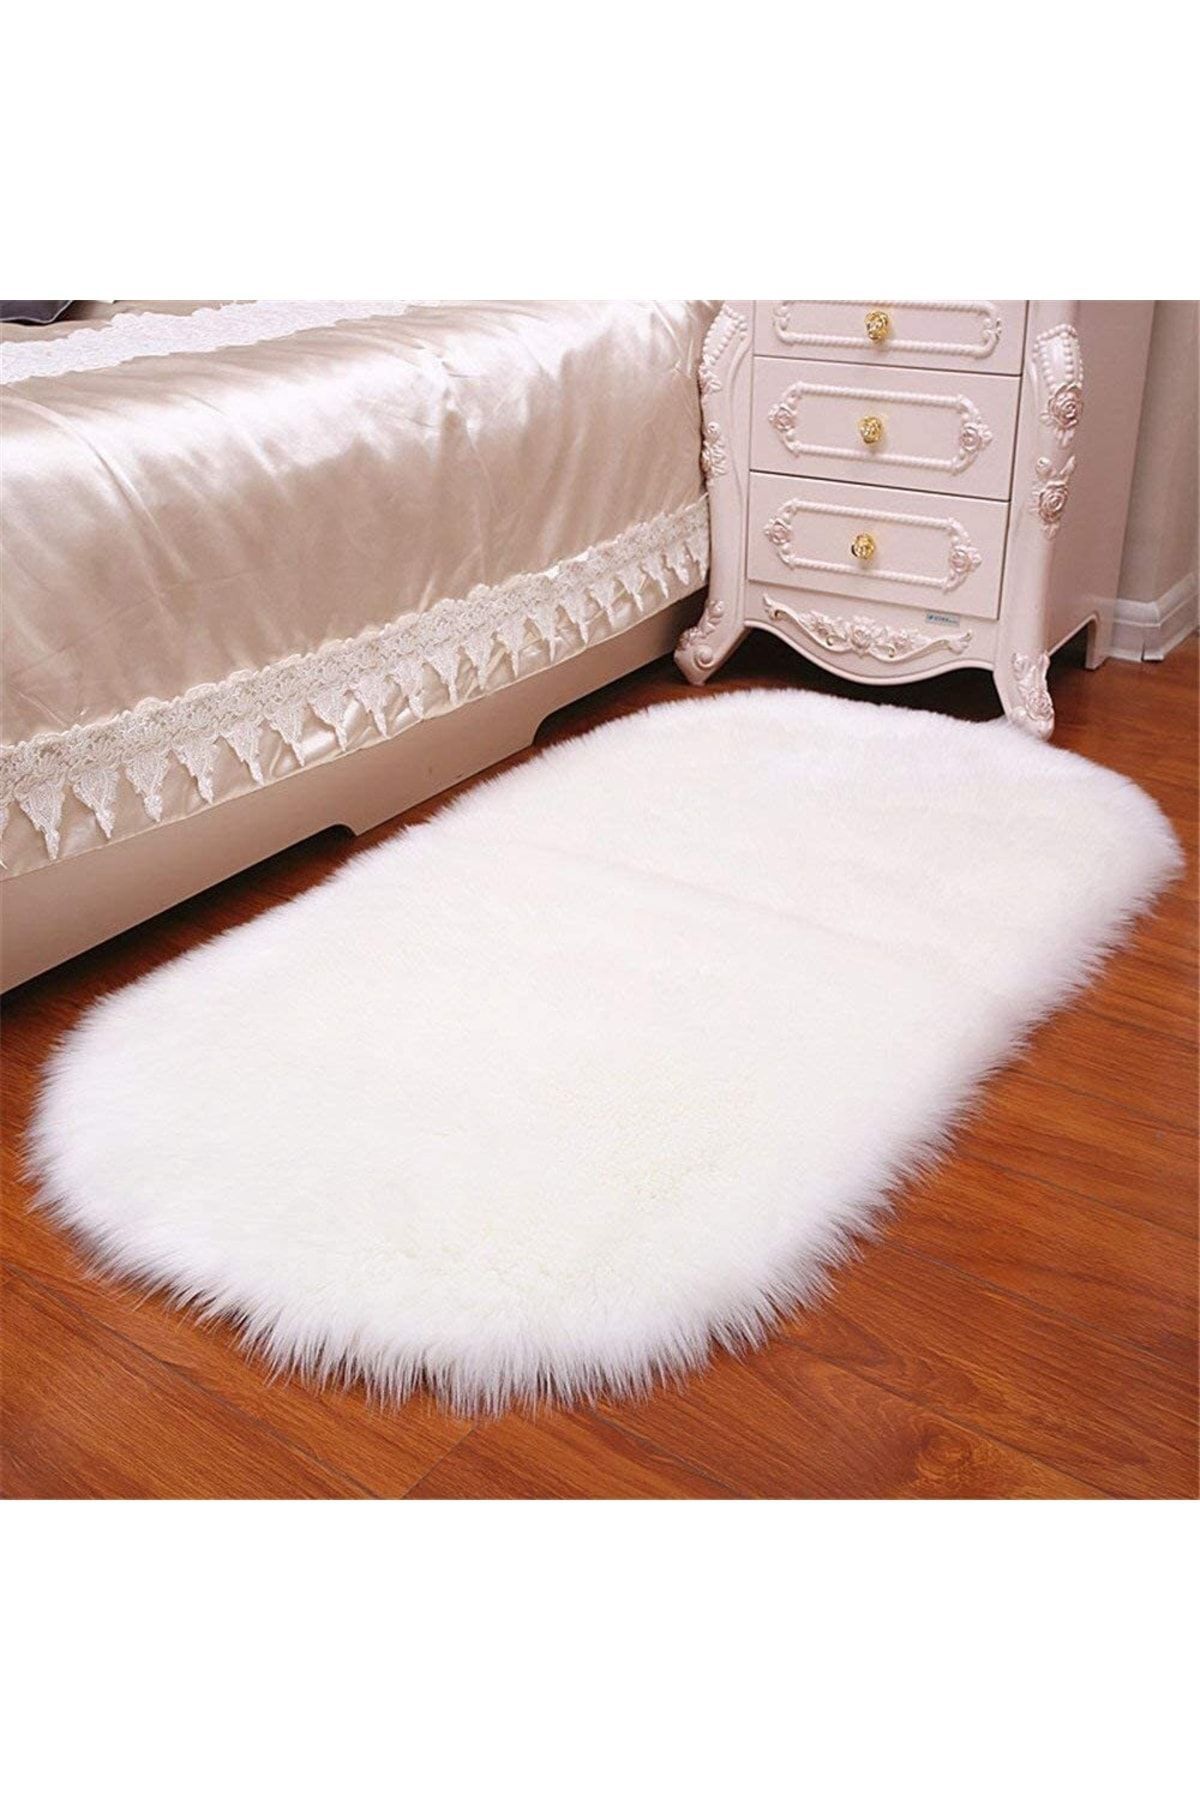 HaLıFoRuM Kuzu Post Peluş Halı Premium Kalite Uzun Yumuşak Tüylü Oval Beyaz